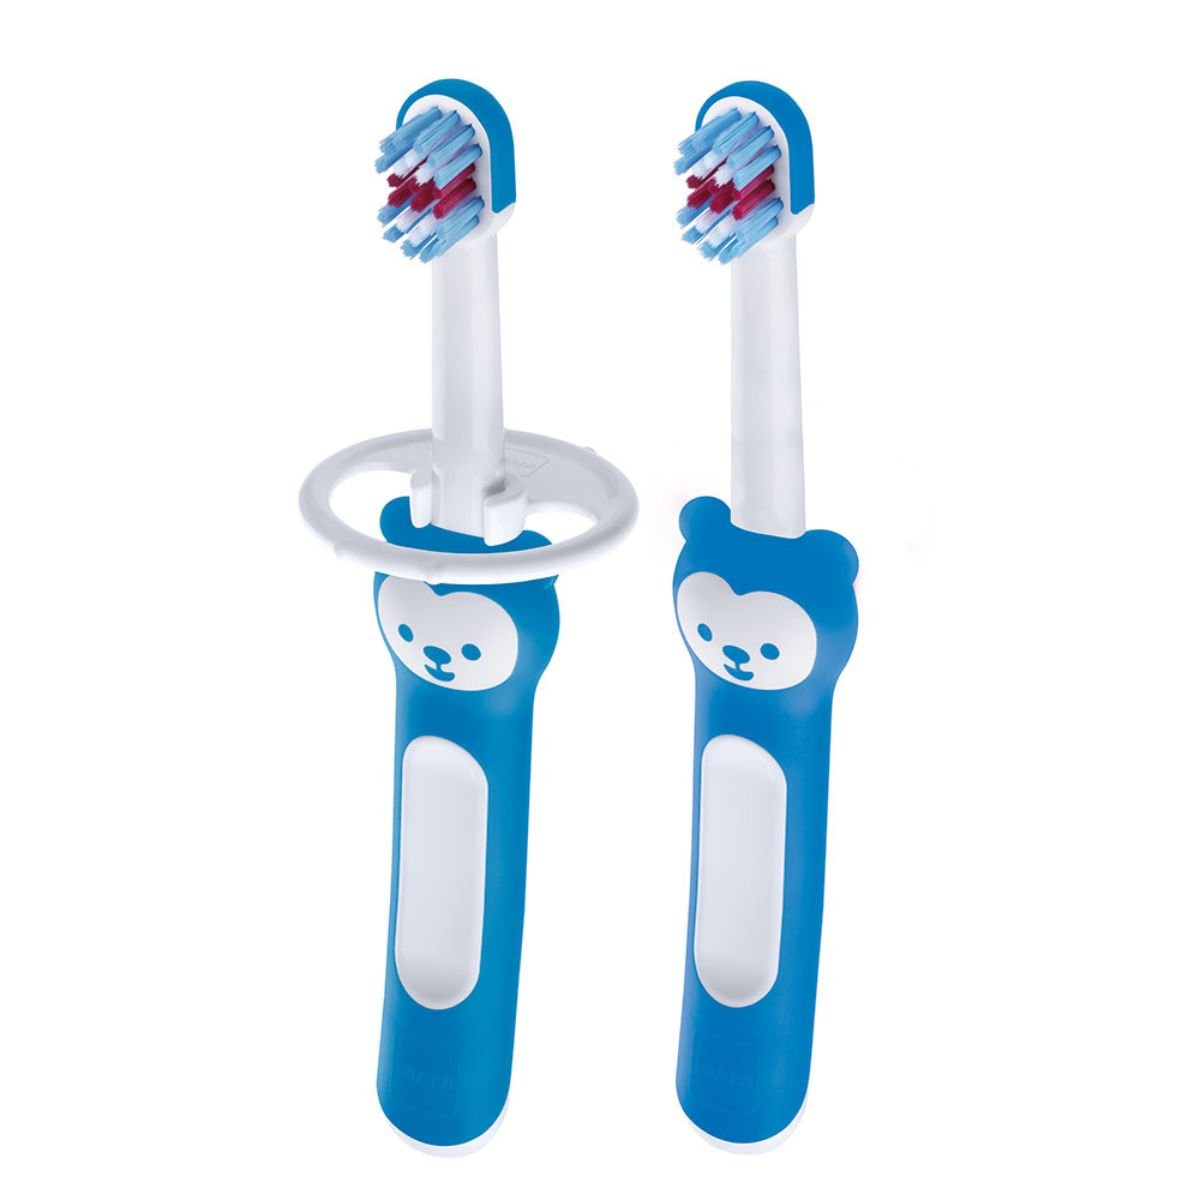 Kit 2 Escovas Dental Infantil Mam Baby's Brush 6 + Meses